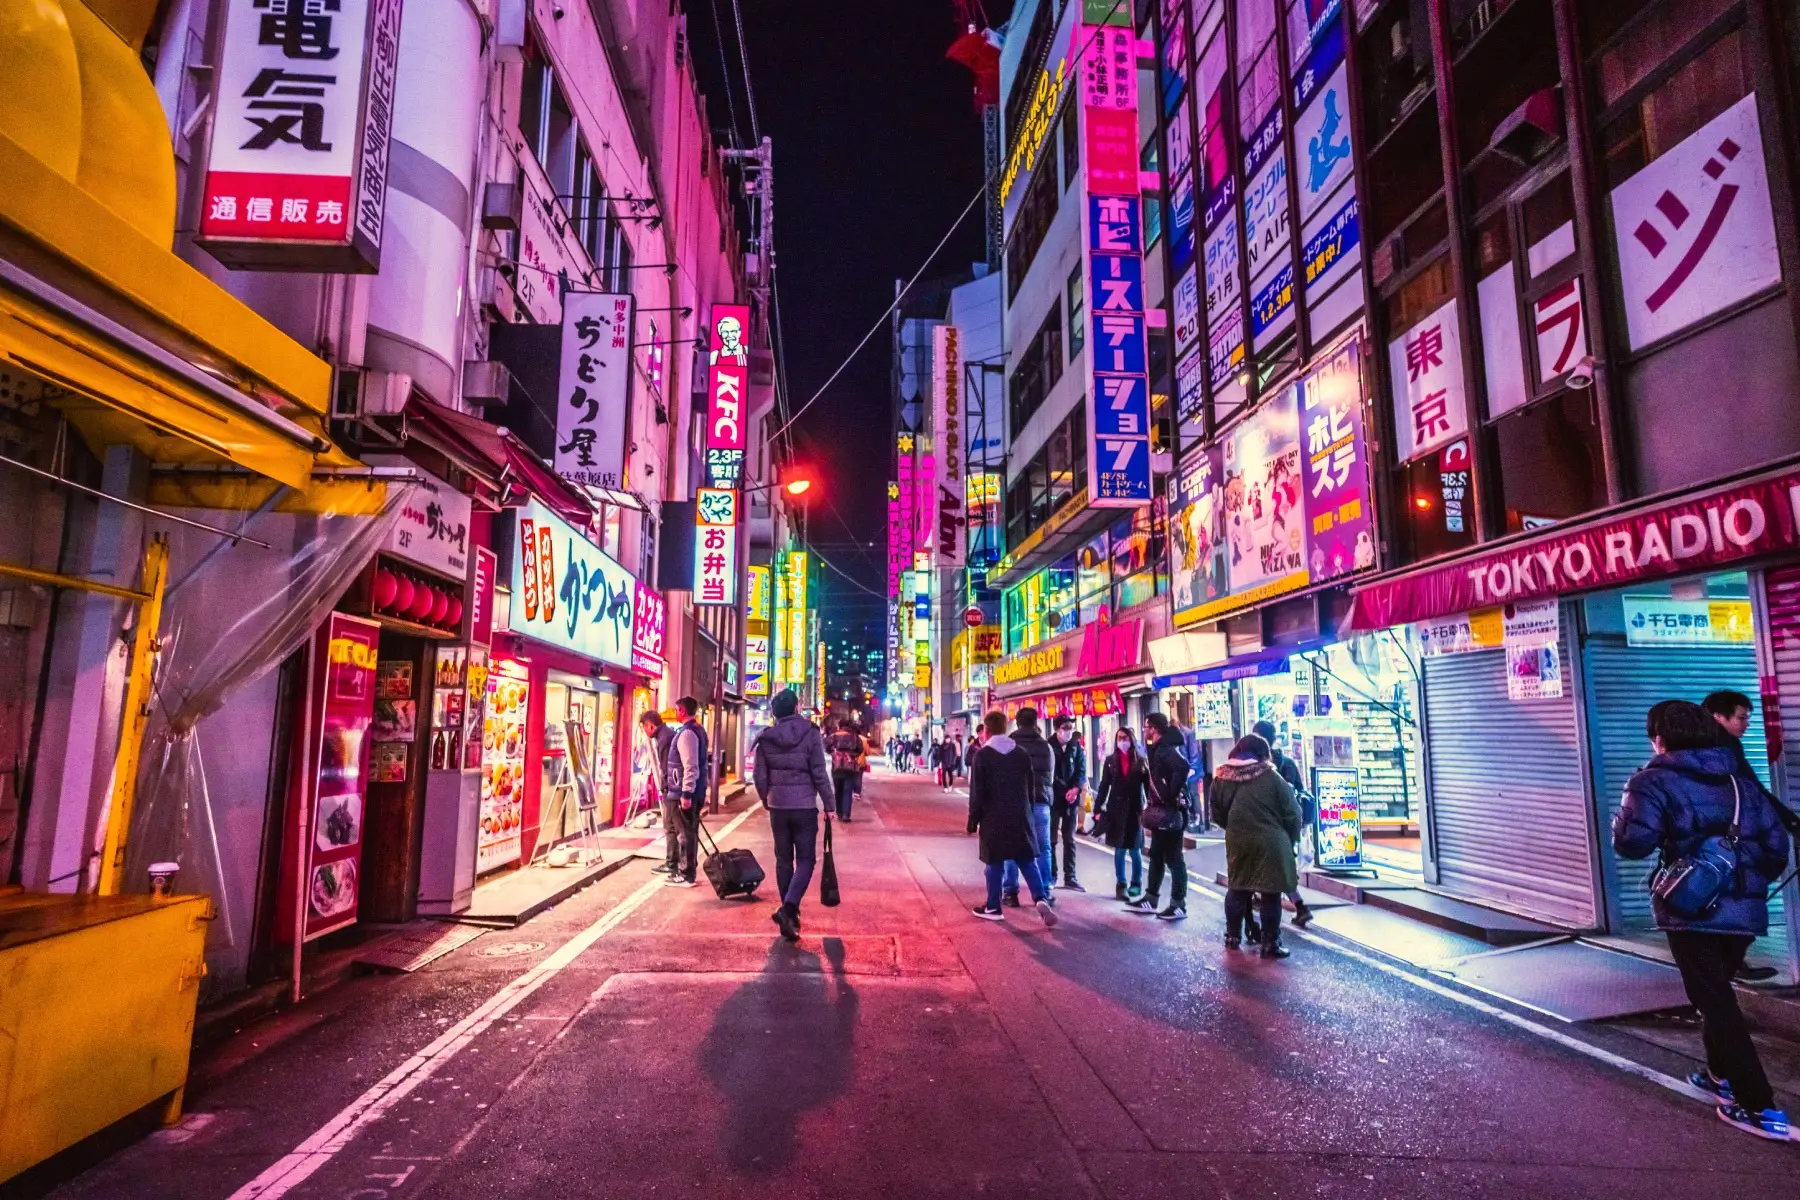 Night street scene in Tokyo